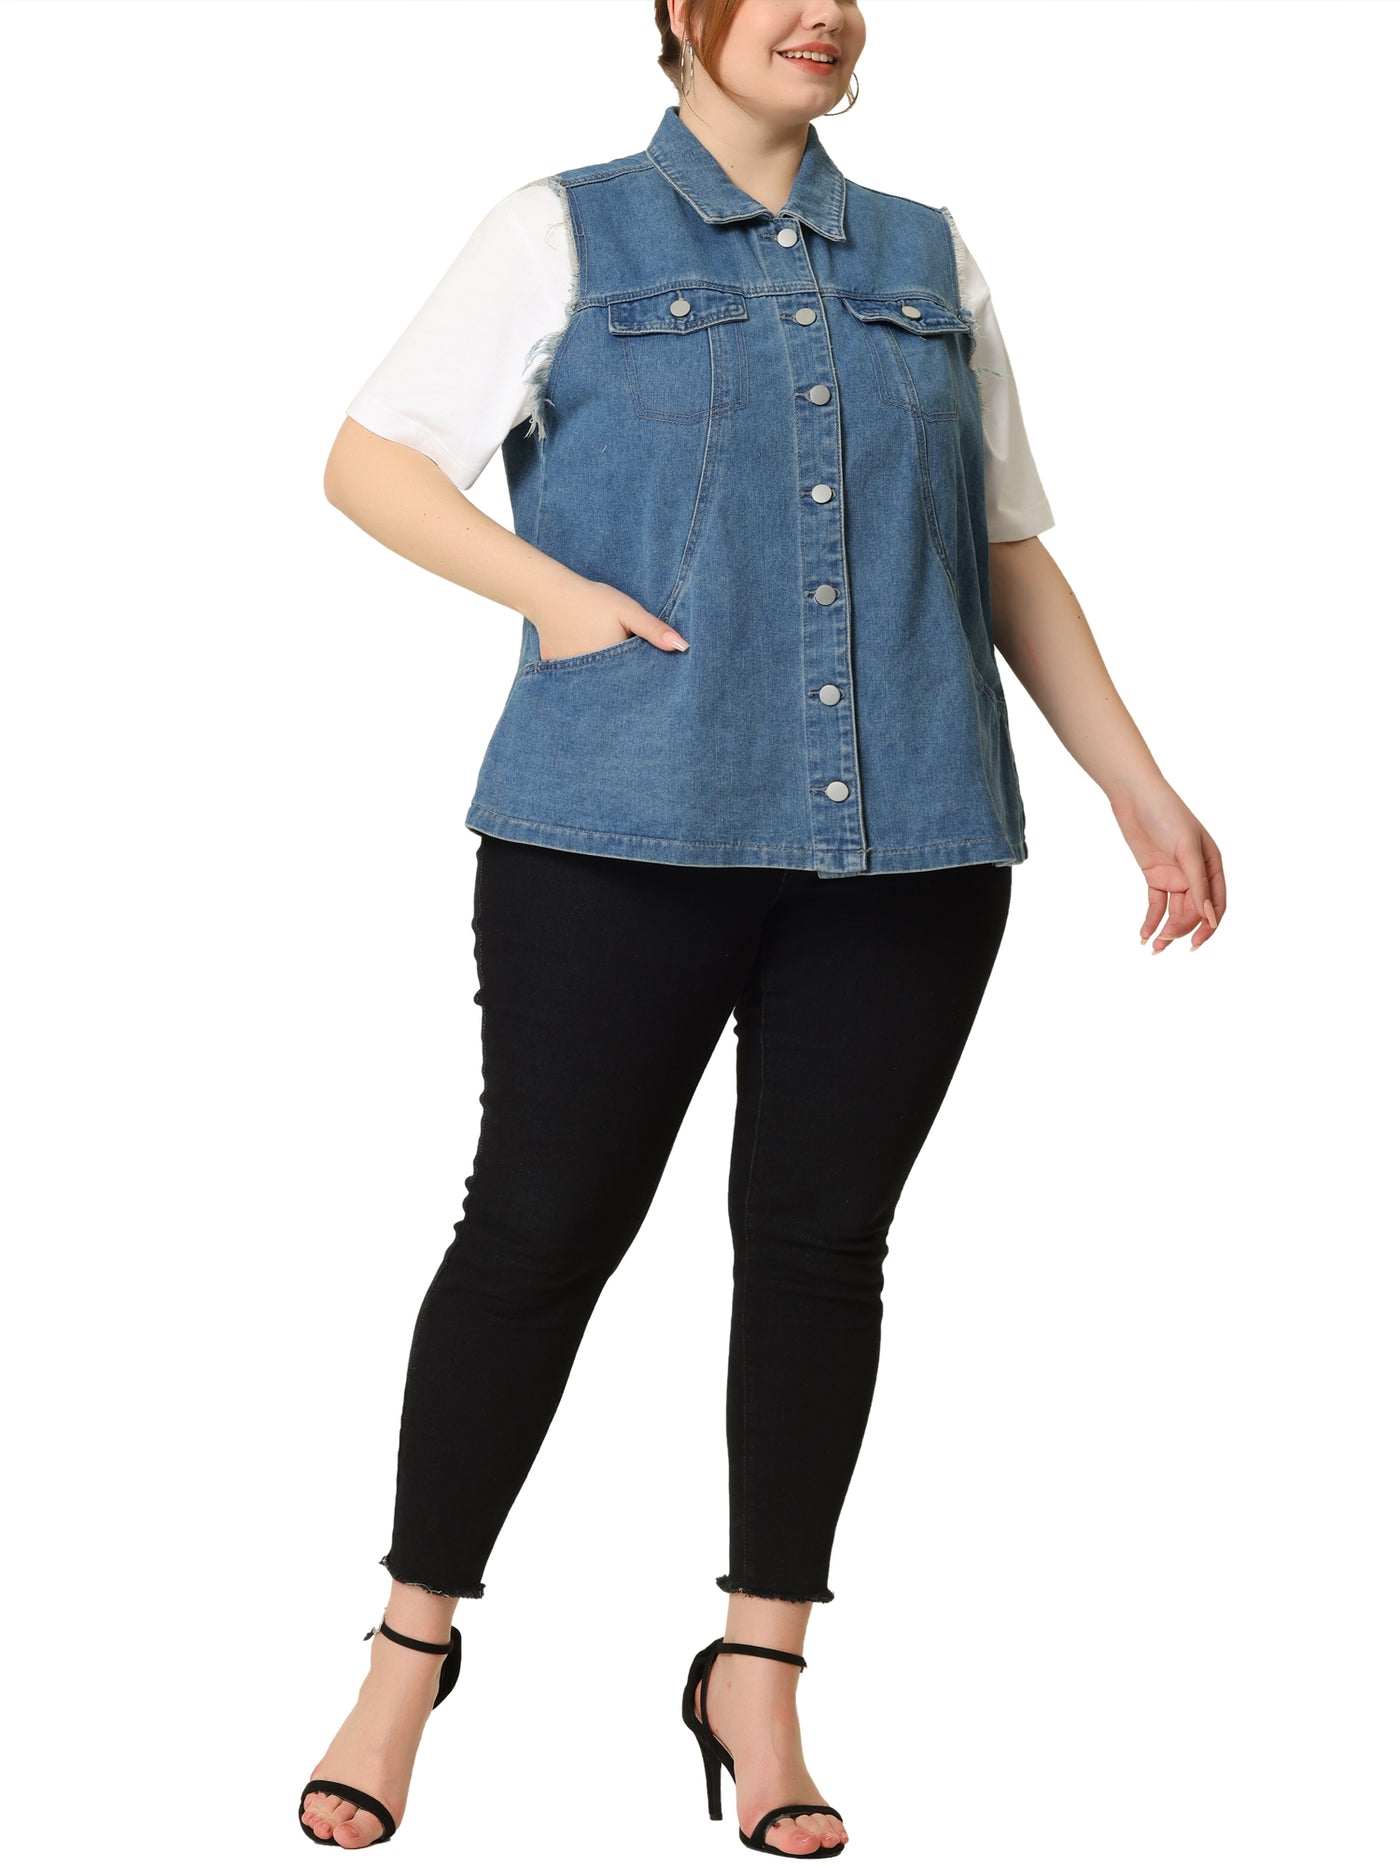 Bublédon Plus Size Denim Vests for Women Causal Button Long Vest Jackets